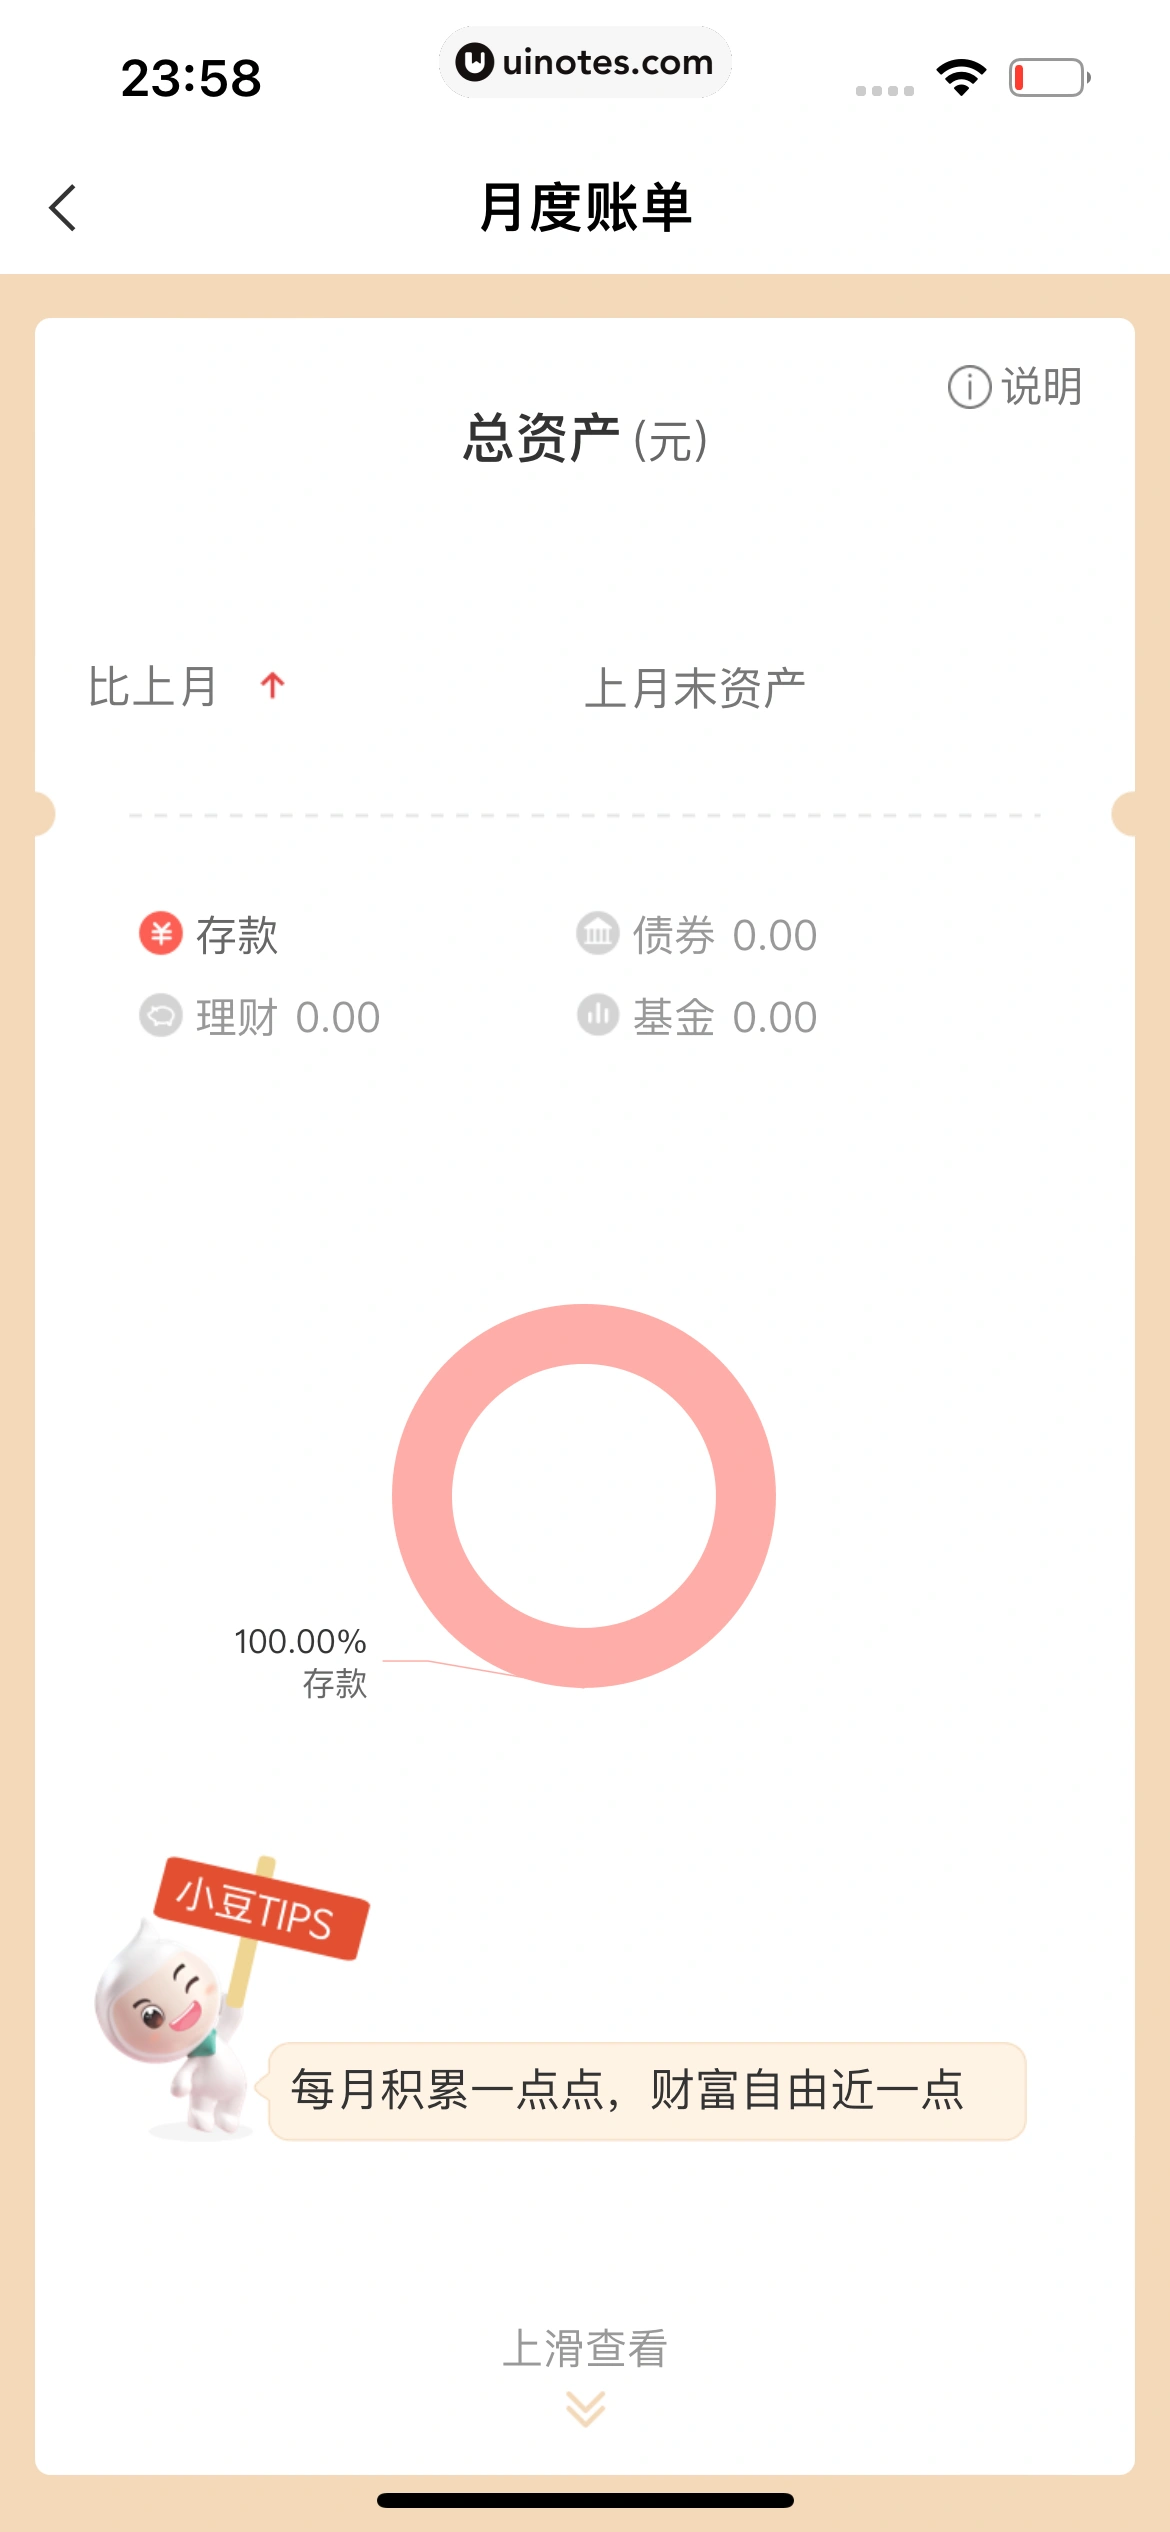 中国农业银行 App 截图 246 - UI Notes